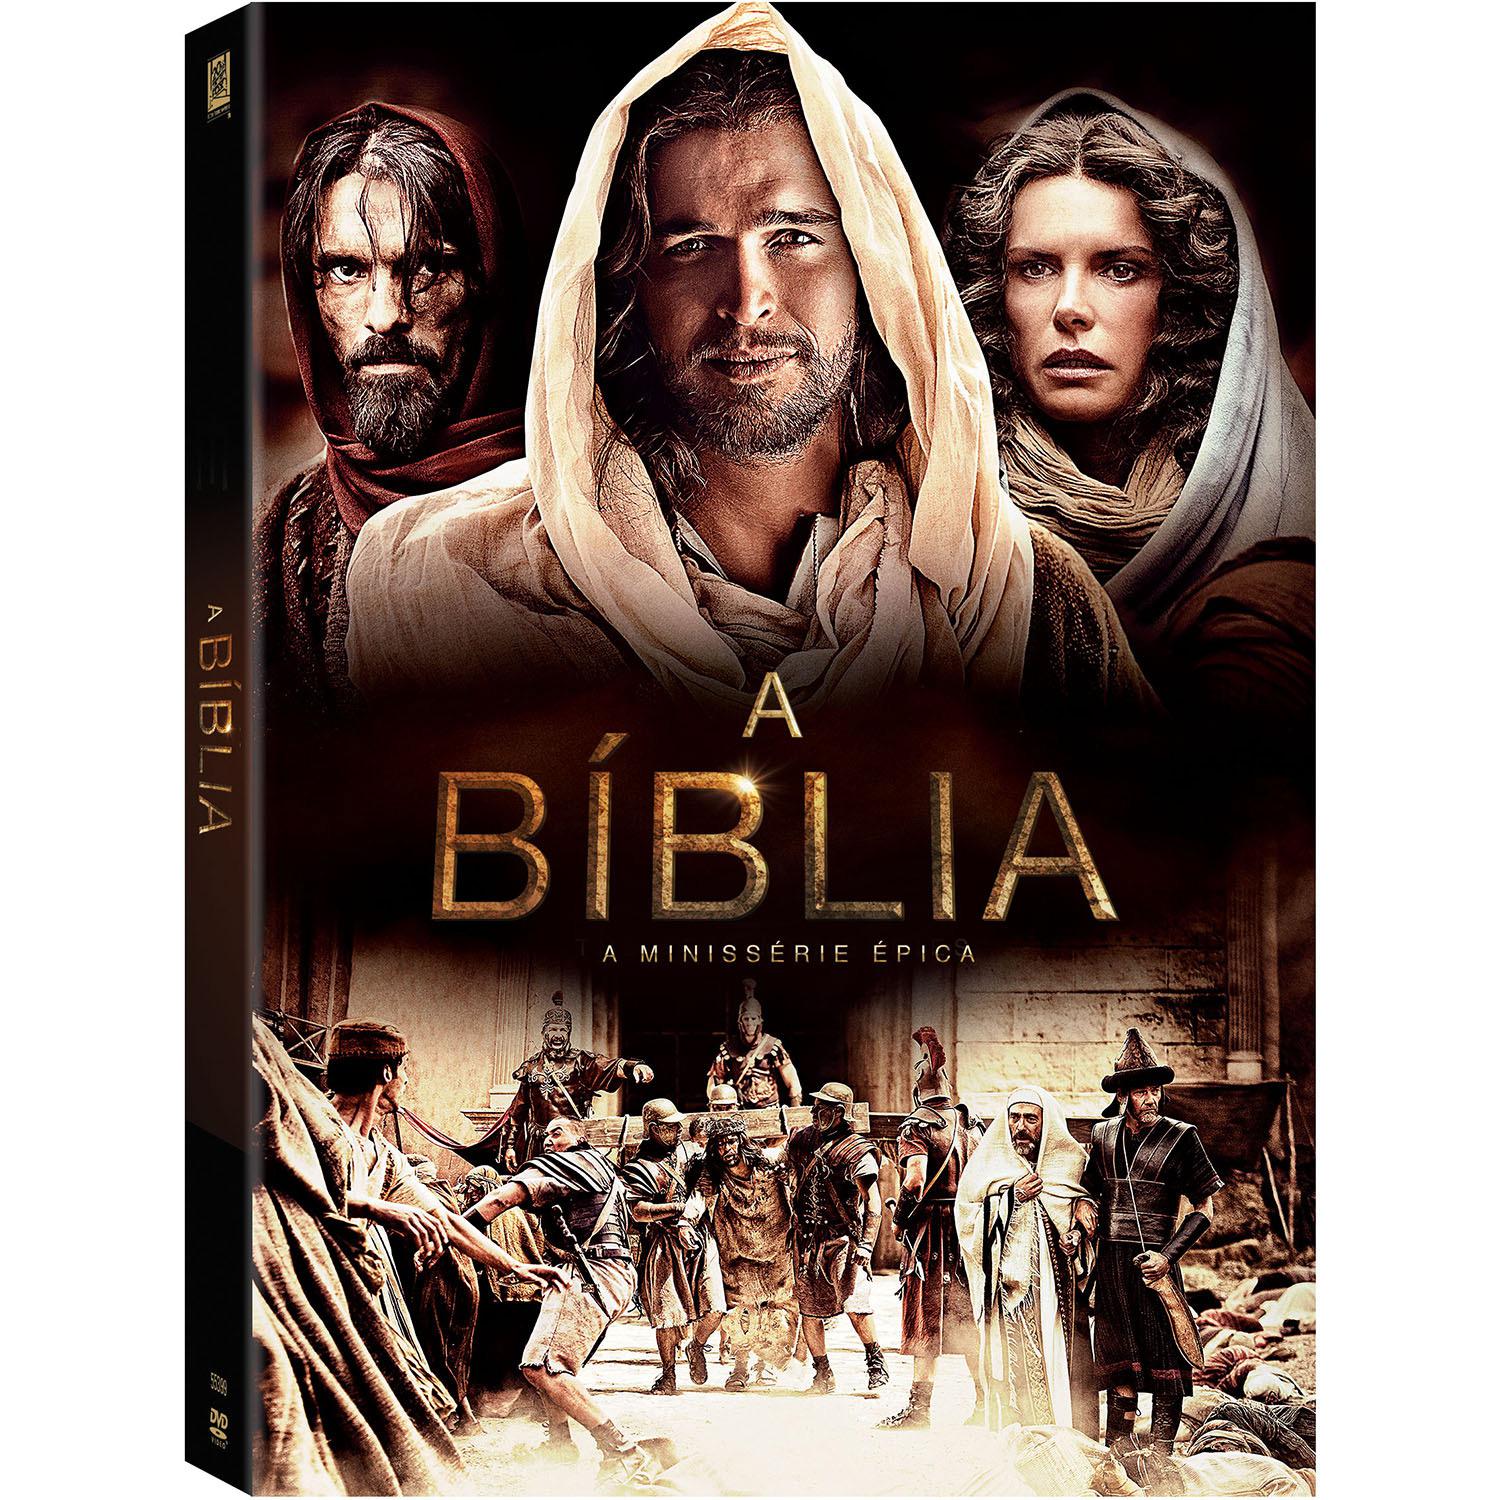 DVD A Bíblia - A Minissérie Épica (4 Discos) é bom? Vale a pena?